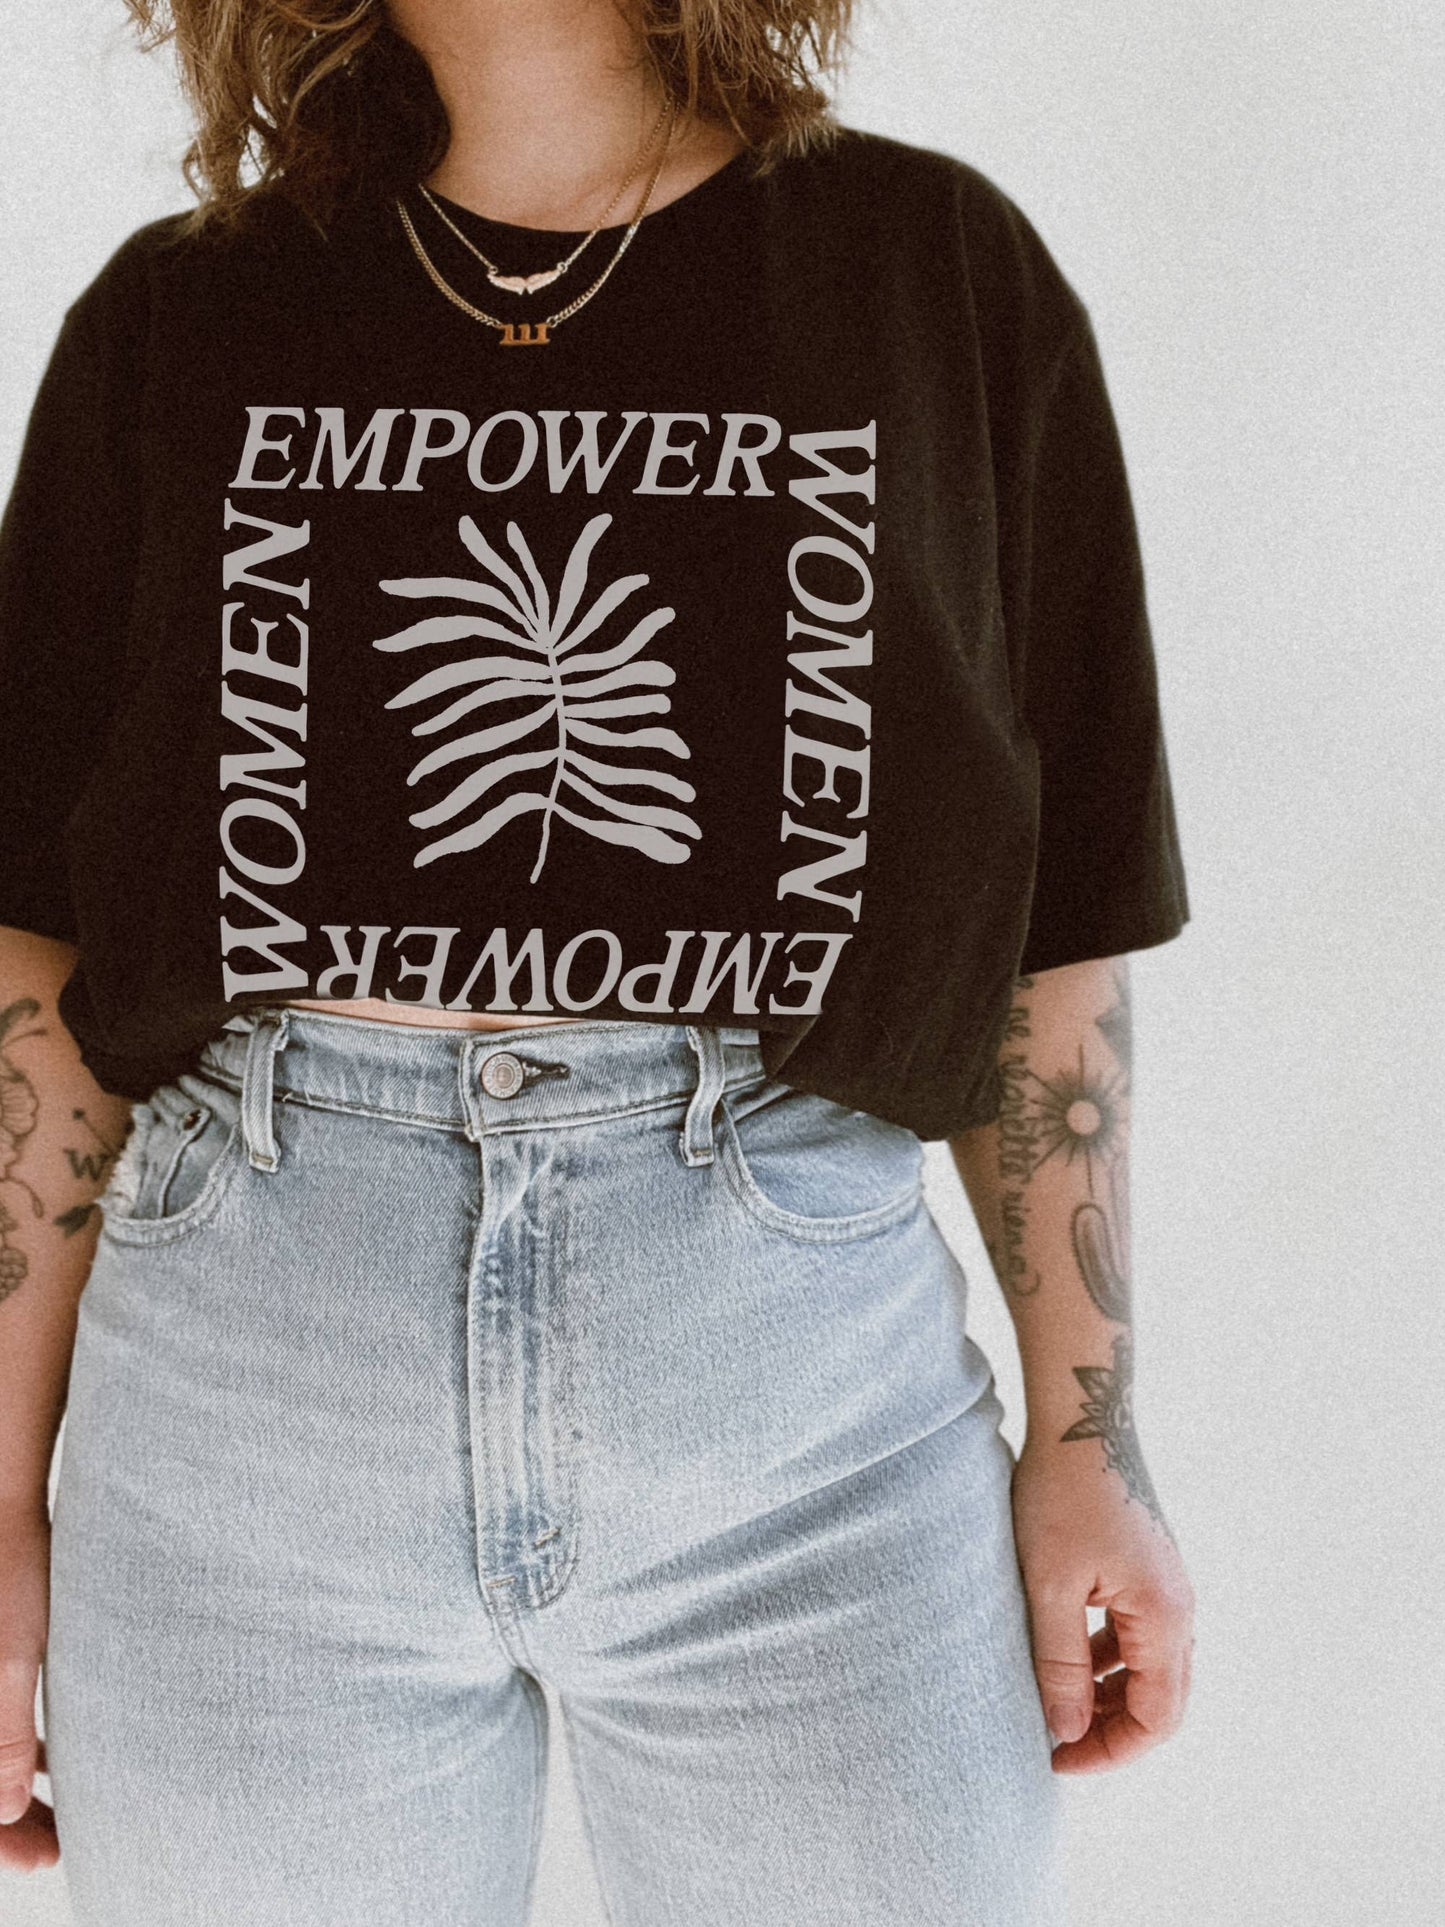 Empower Women Graphic Tee